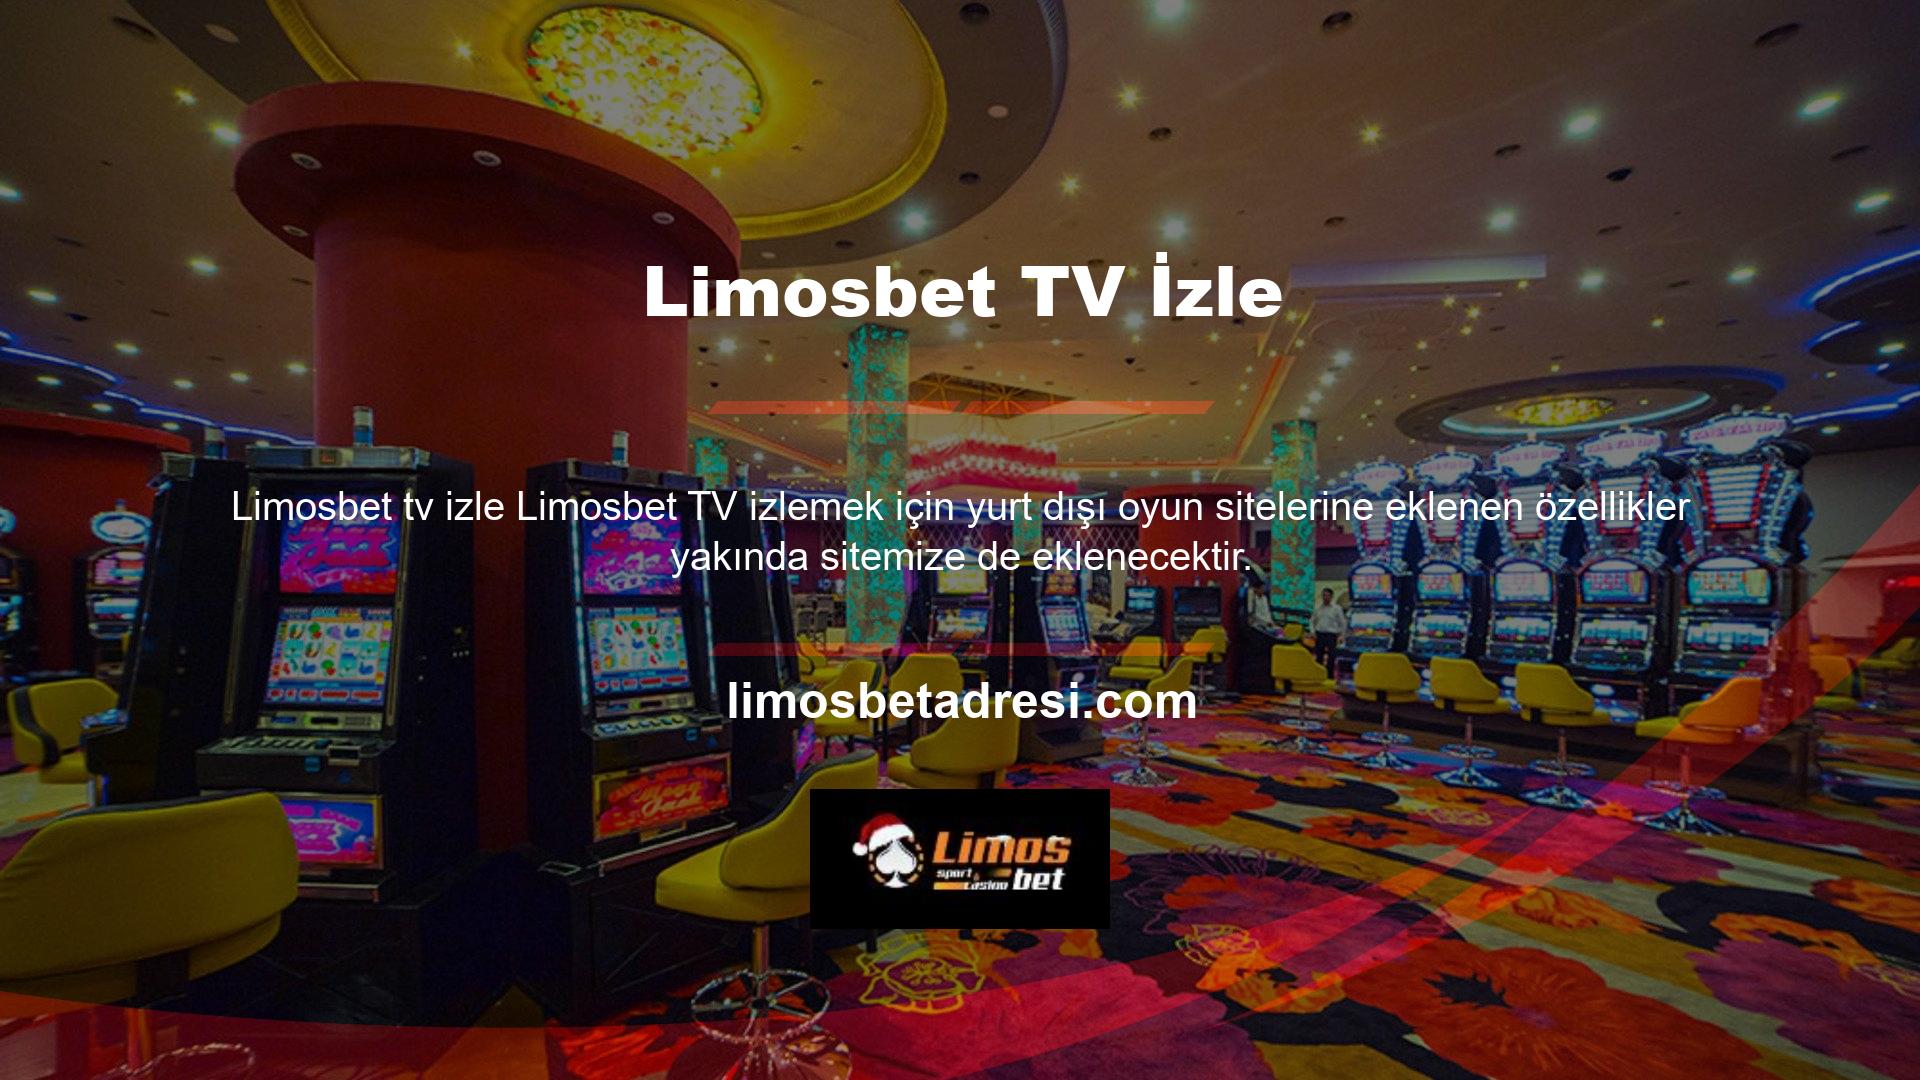 Ayrıca Limosbet aktif olarak televizyona alternatifler sunuyor